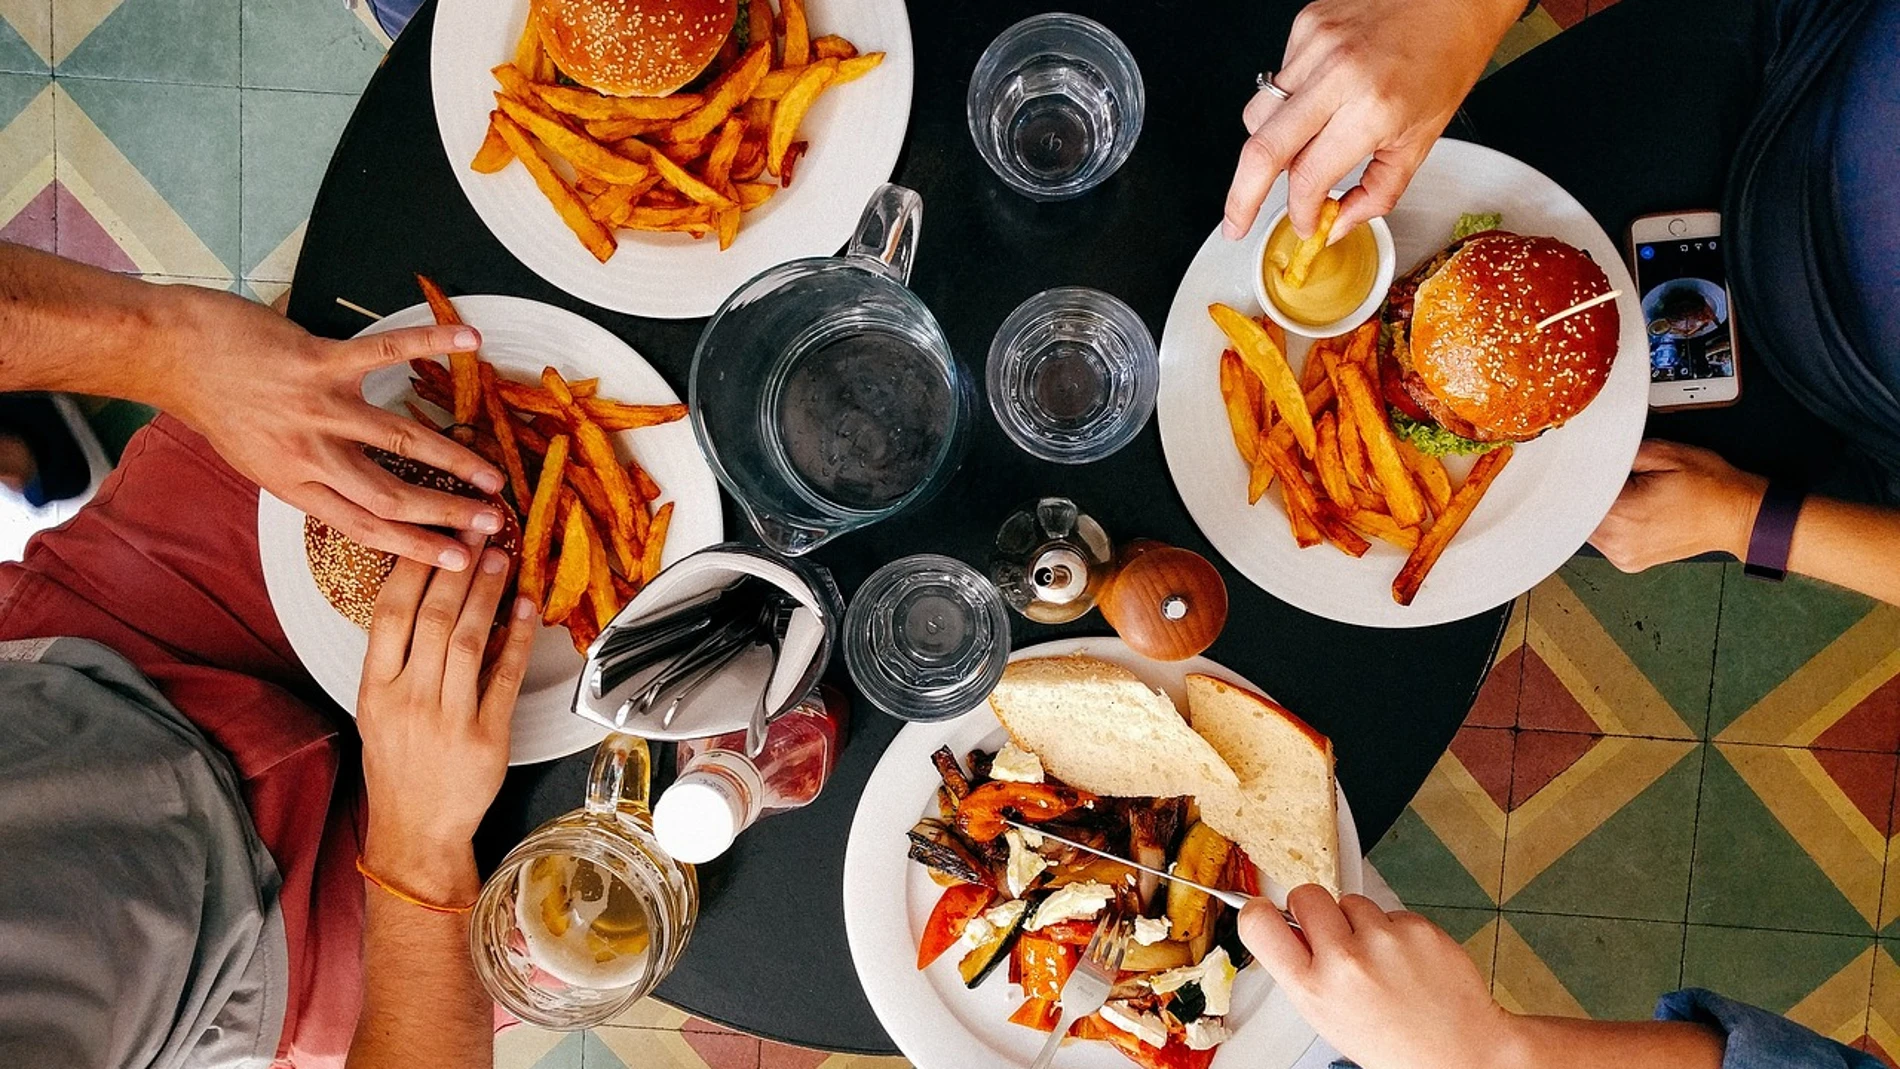 Abusar de la comida rápida provoca daños similares o peores al consumo excesivo de alcohol 